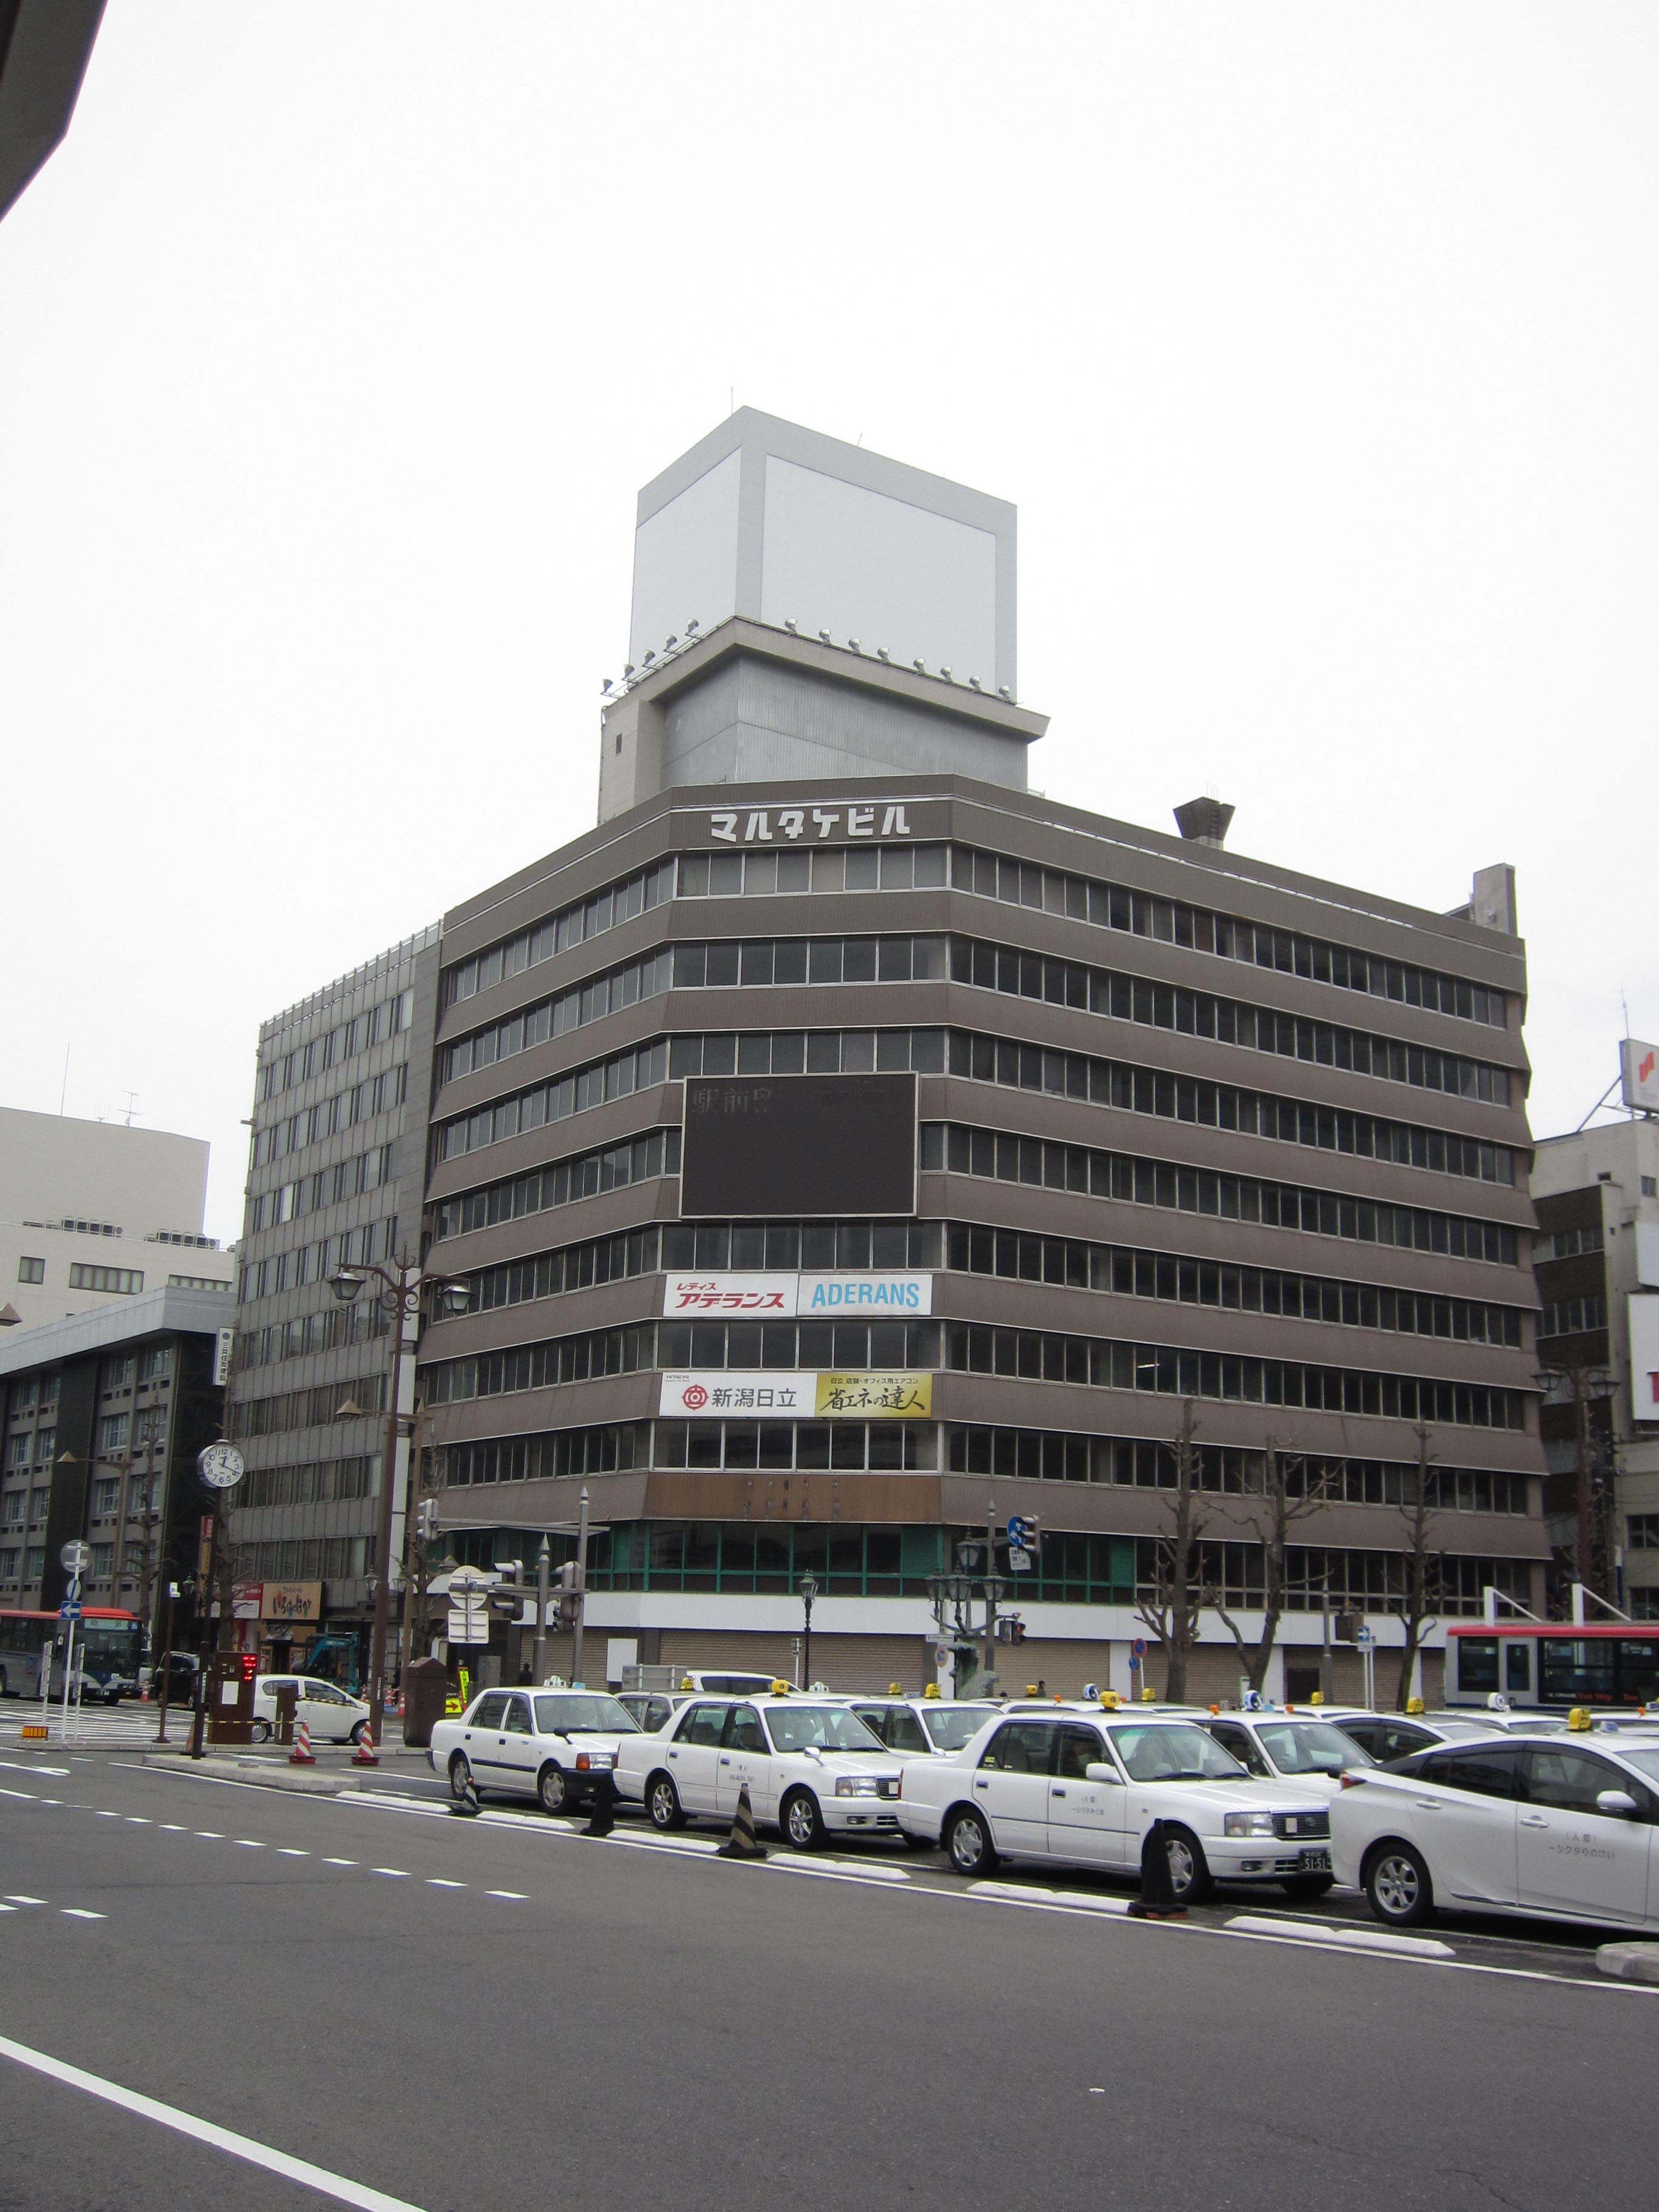 マルタケ駅前ビル解体工事を鹿島建設が受注 日本工業経済新聞社